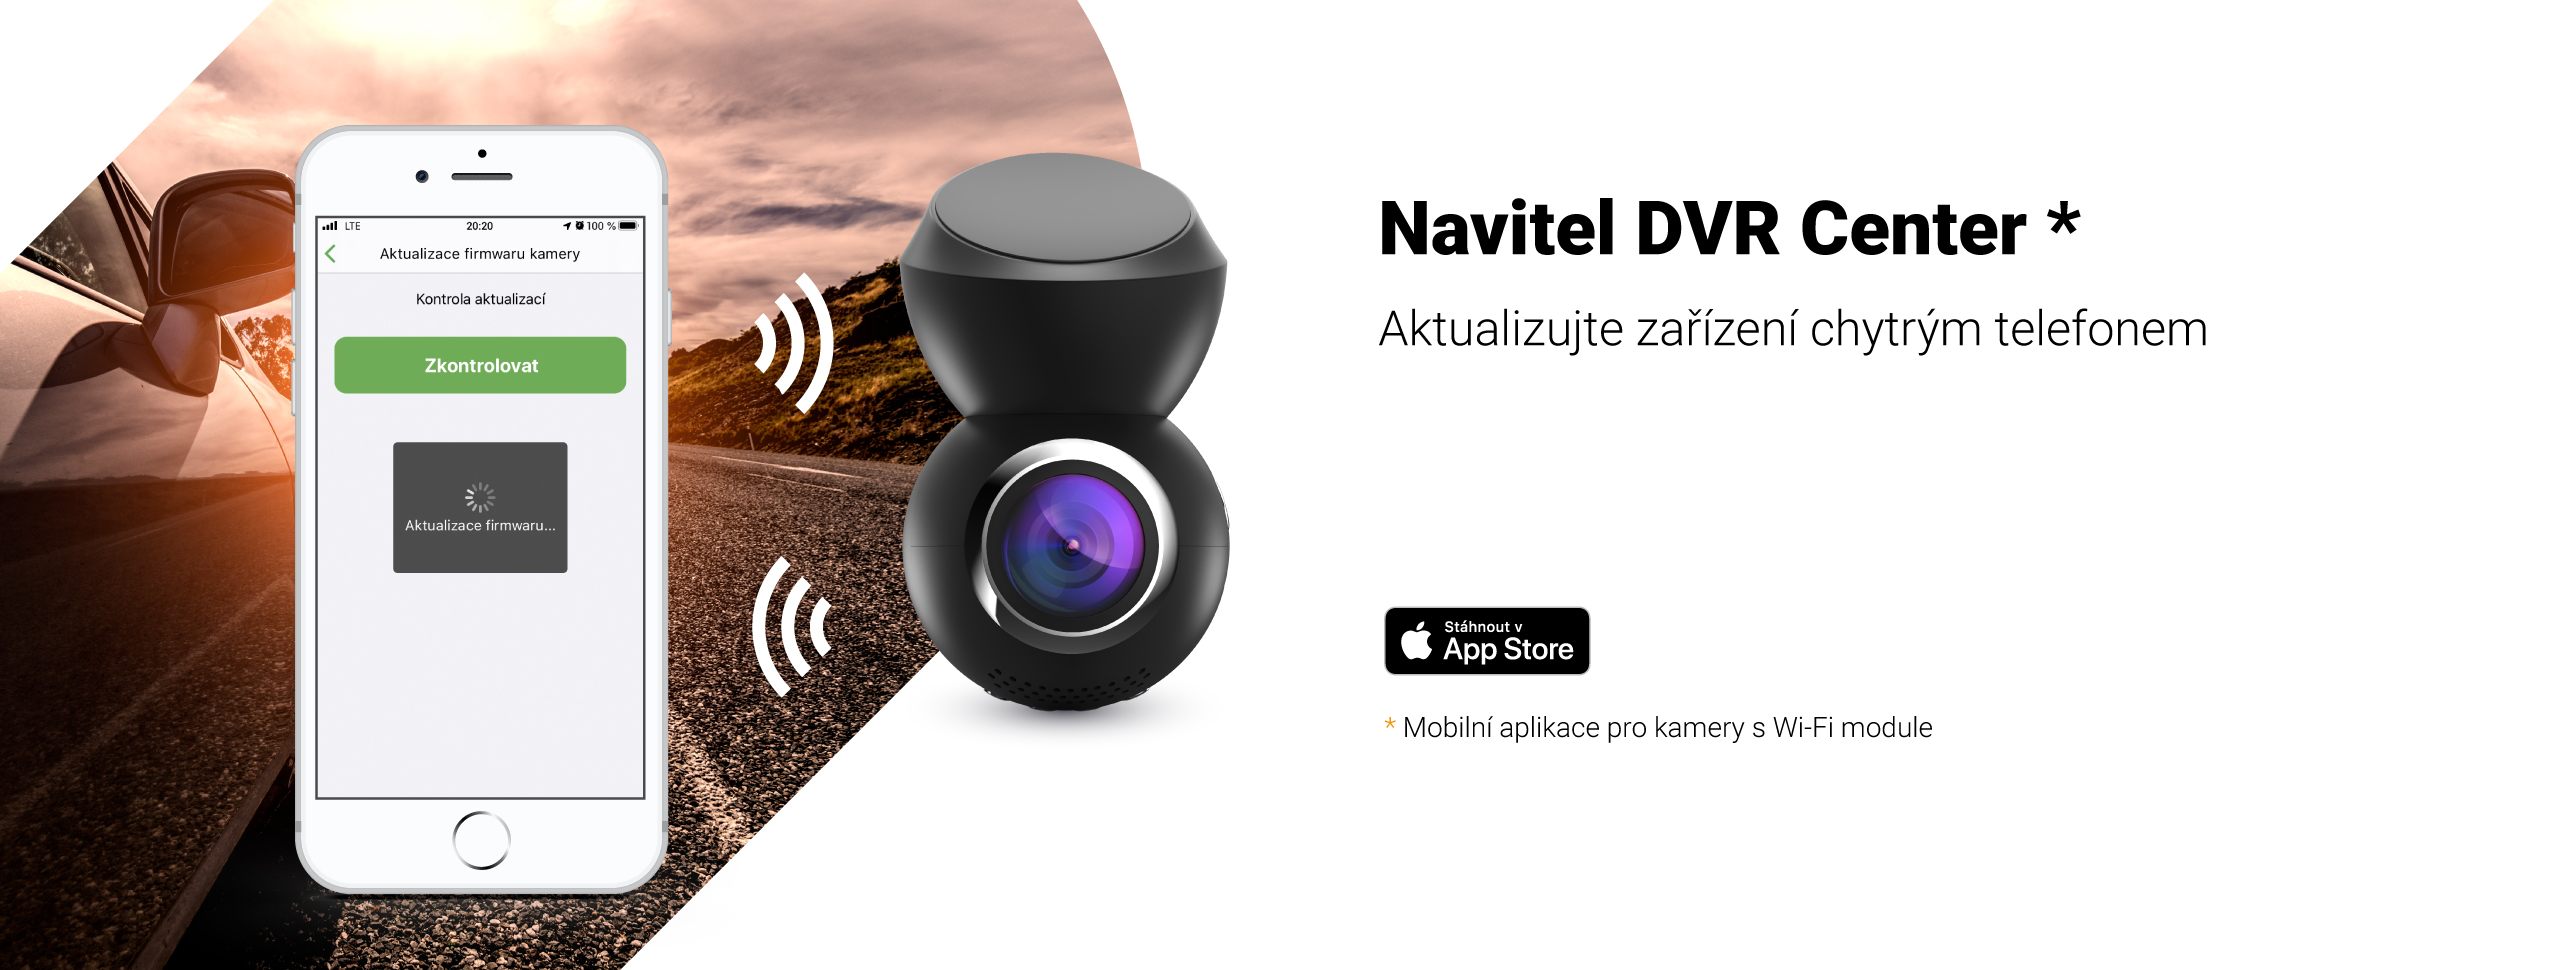 Uživatelé systému iOS mohou nyní aktualizovat firmware kamery prostřednictvím aplikace Navitel DVR Center